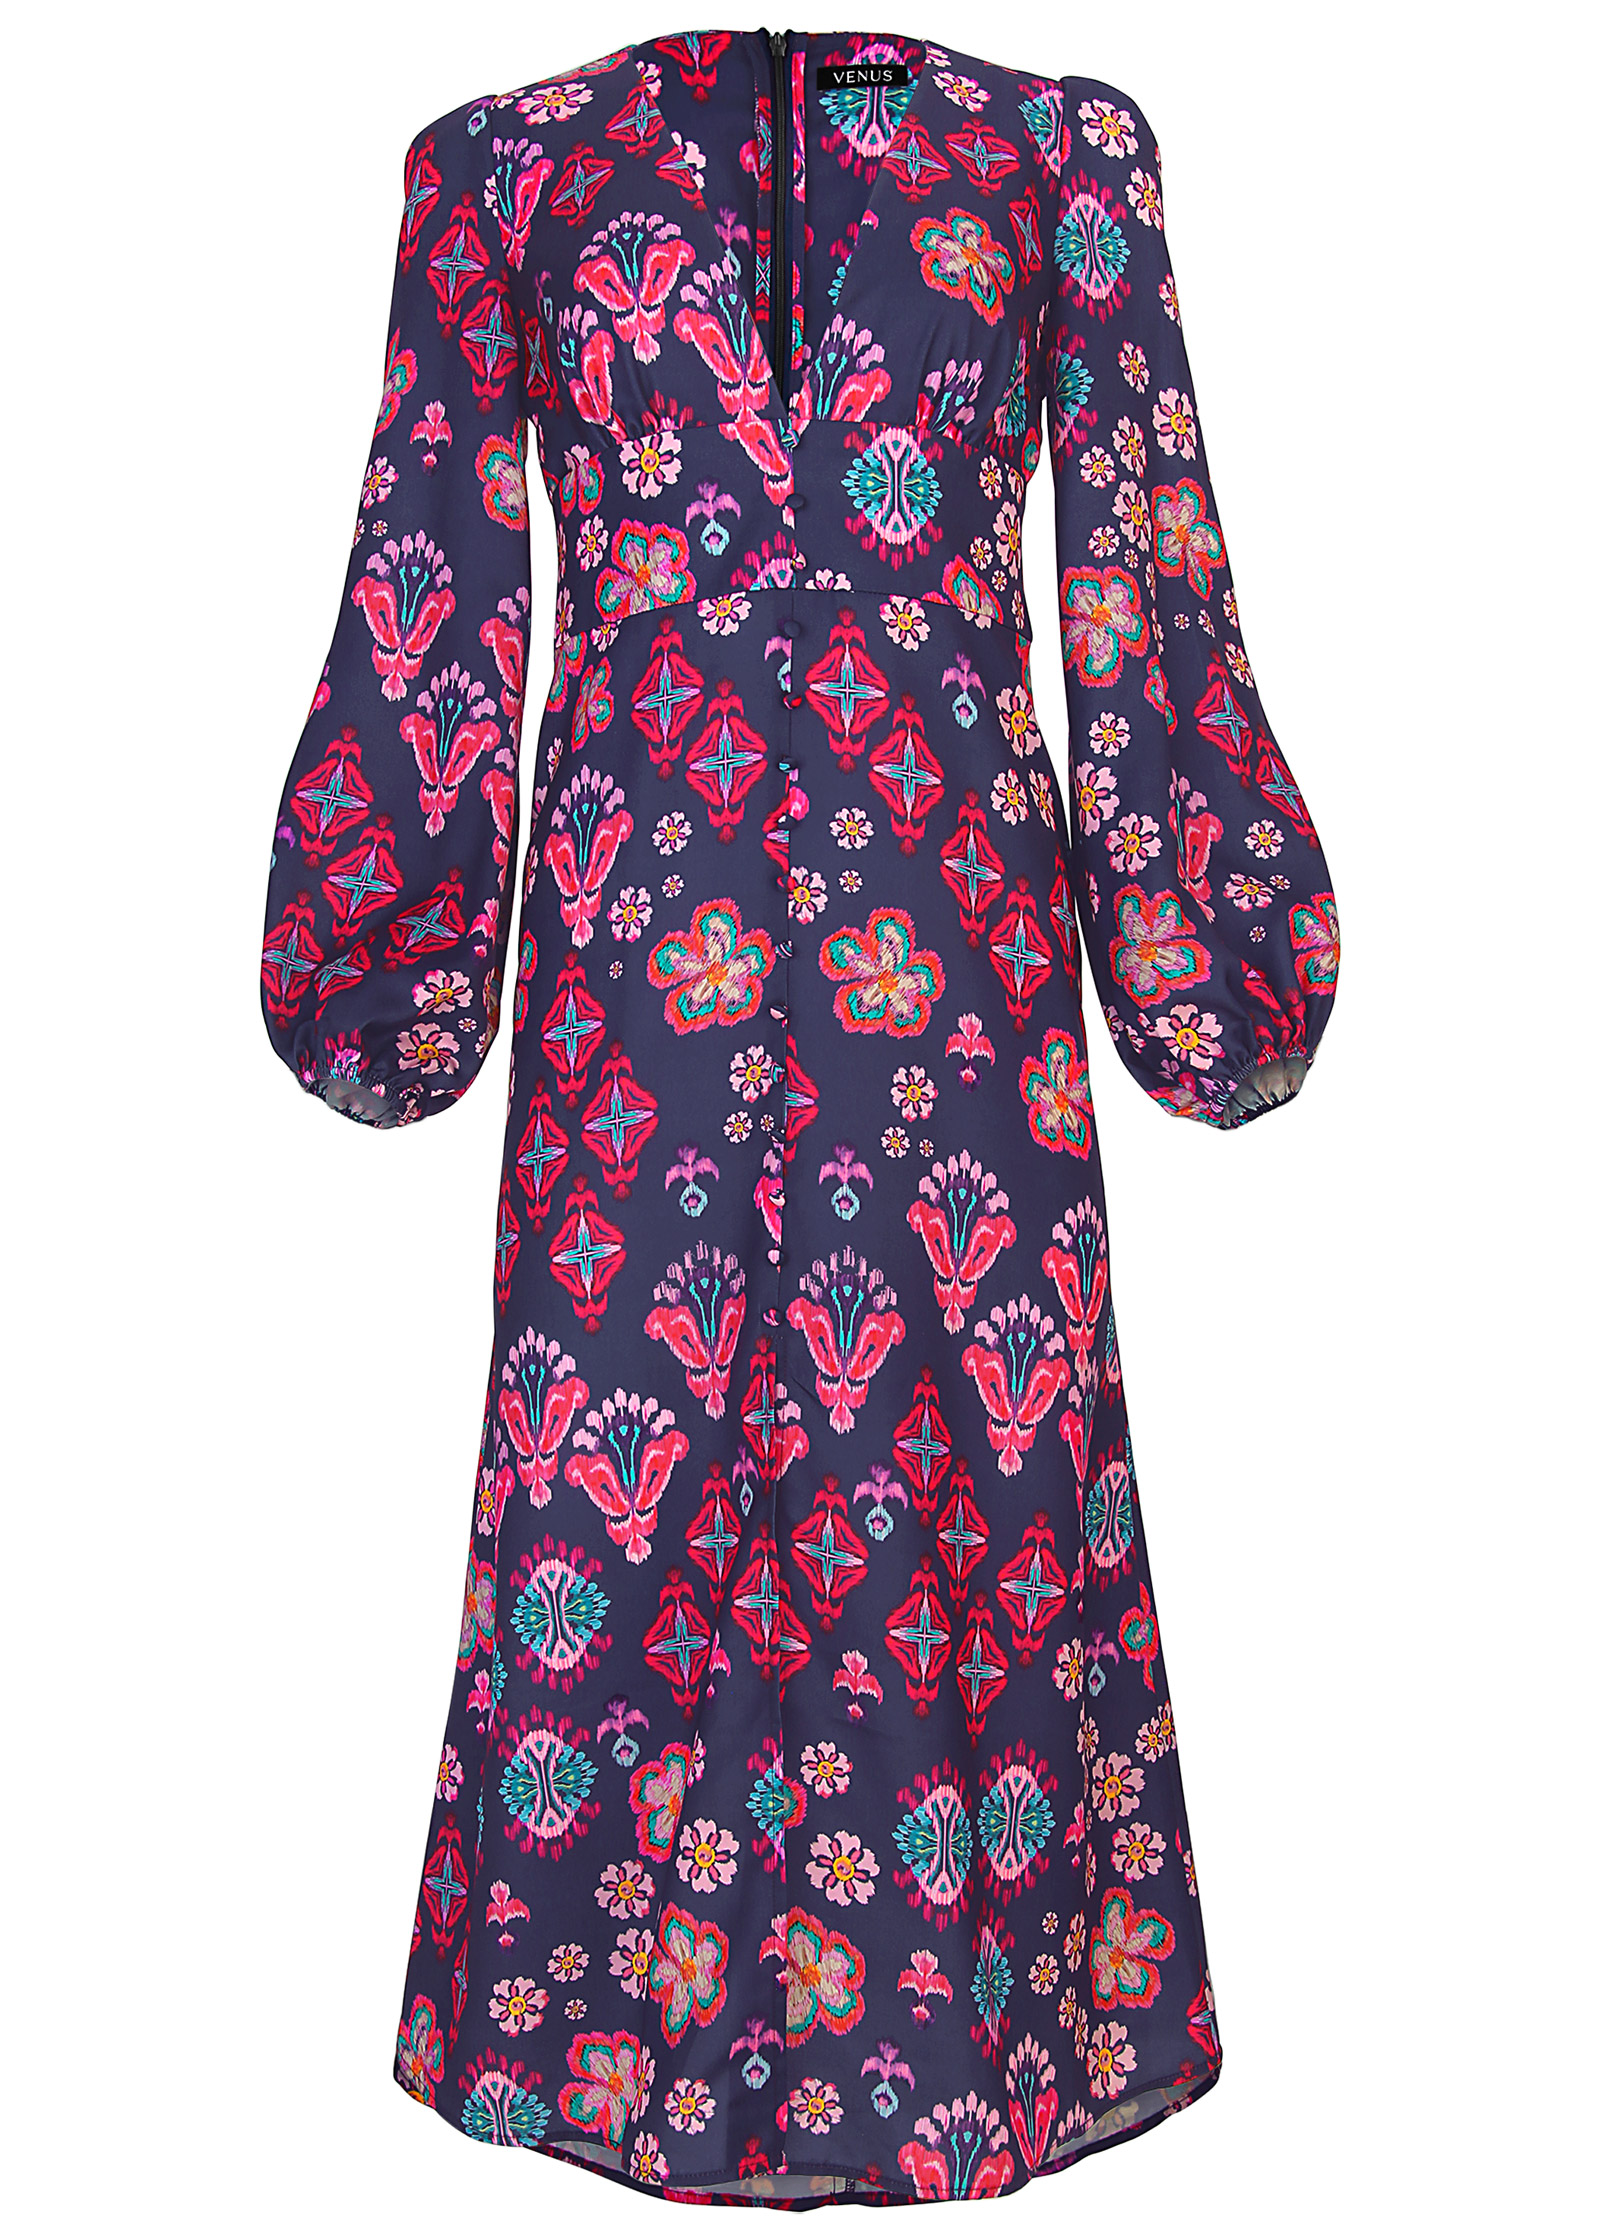 Long Sleeve Printed Dress in Modern Folk Floral | VENUS